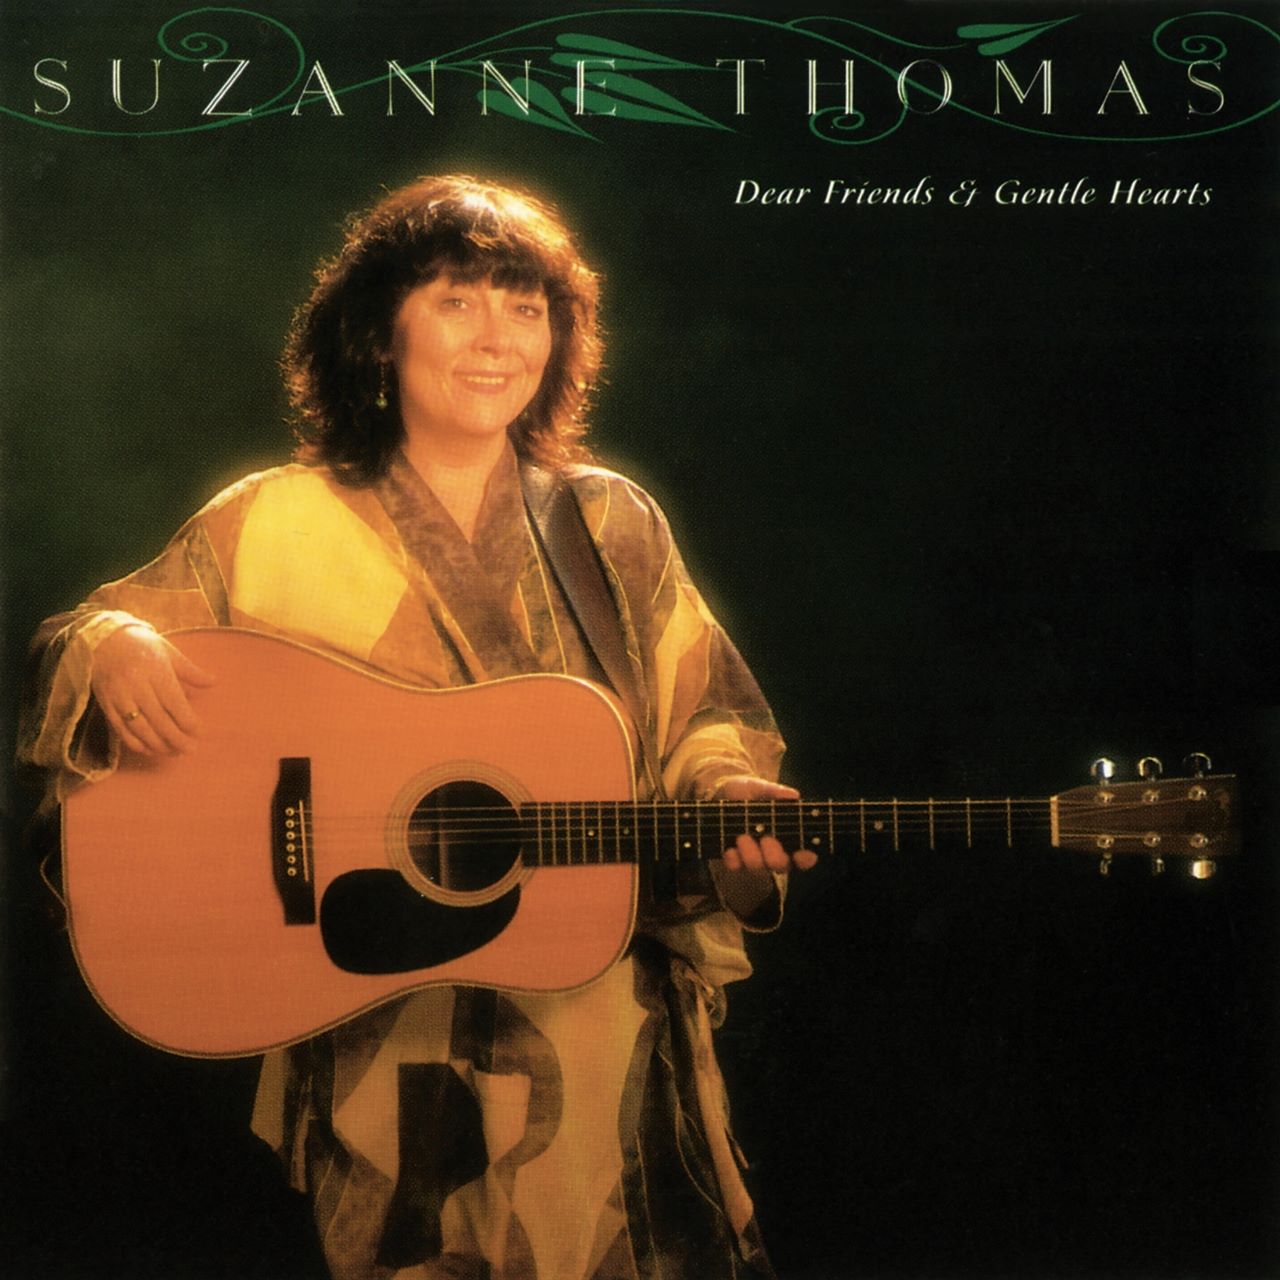 Suzanne Thomas - Dear Friends & Gentle Hearts cover album